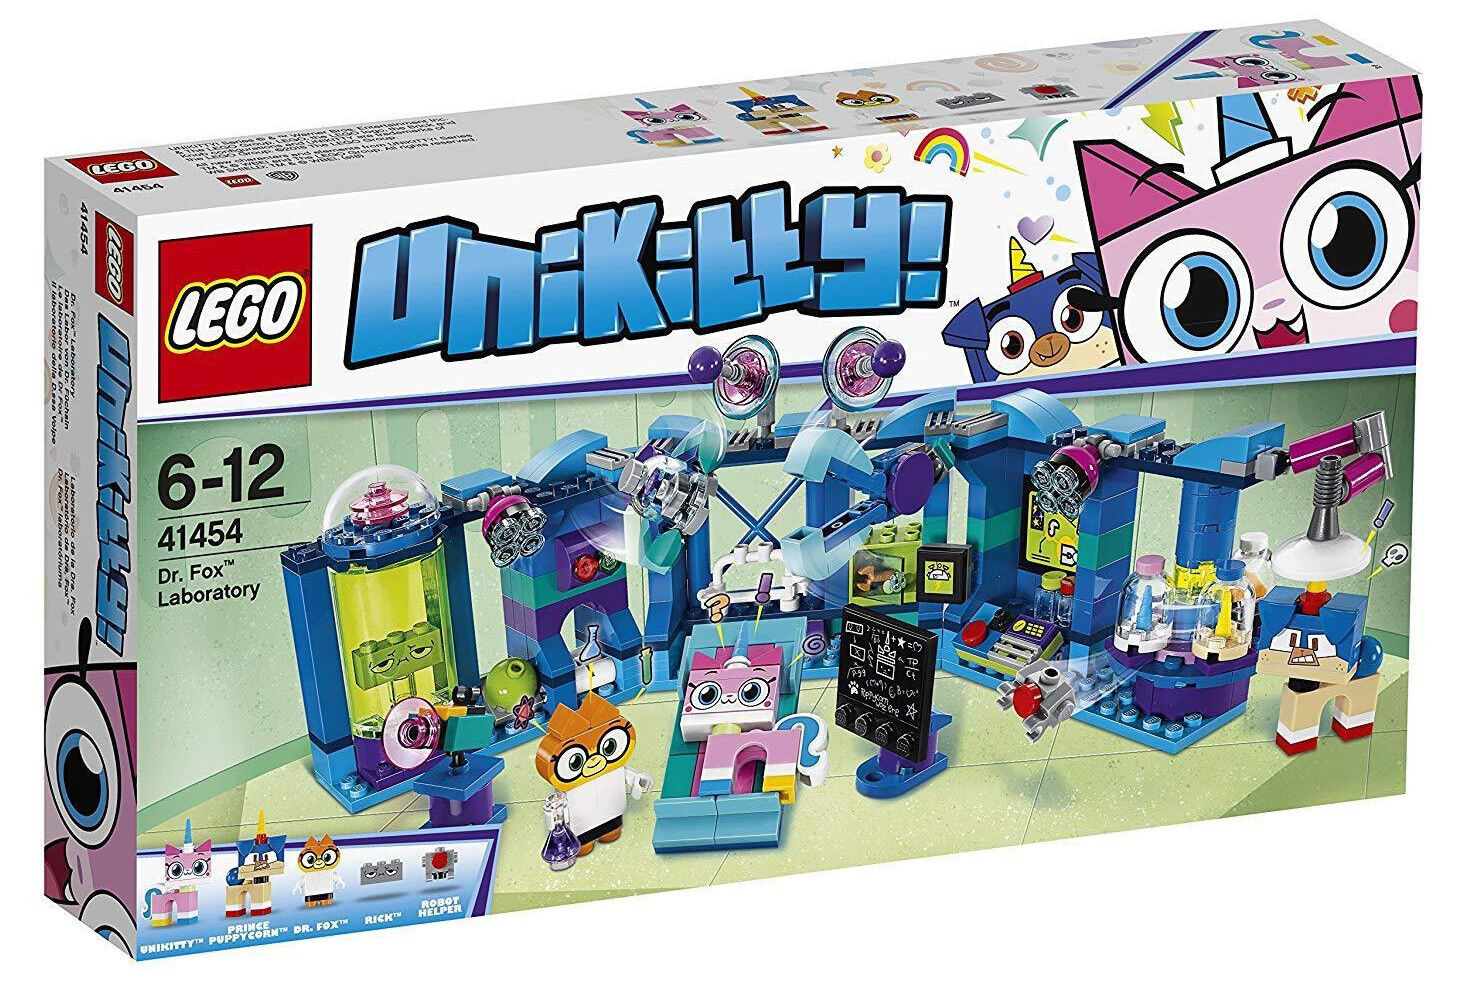 Lego 41454 - Unikitty Dr Fox Laboratory Set Prince Puppycorn Rick 